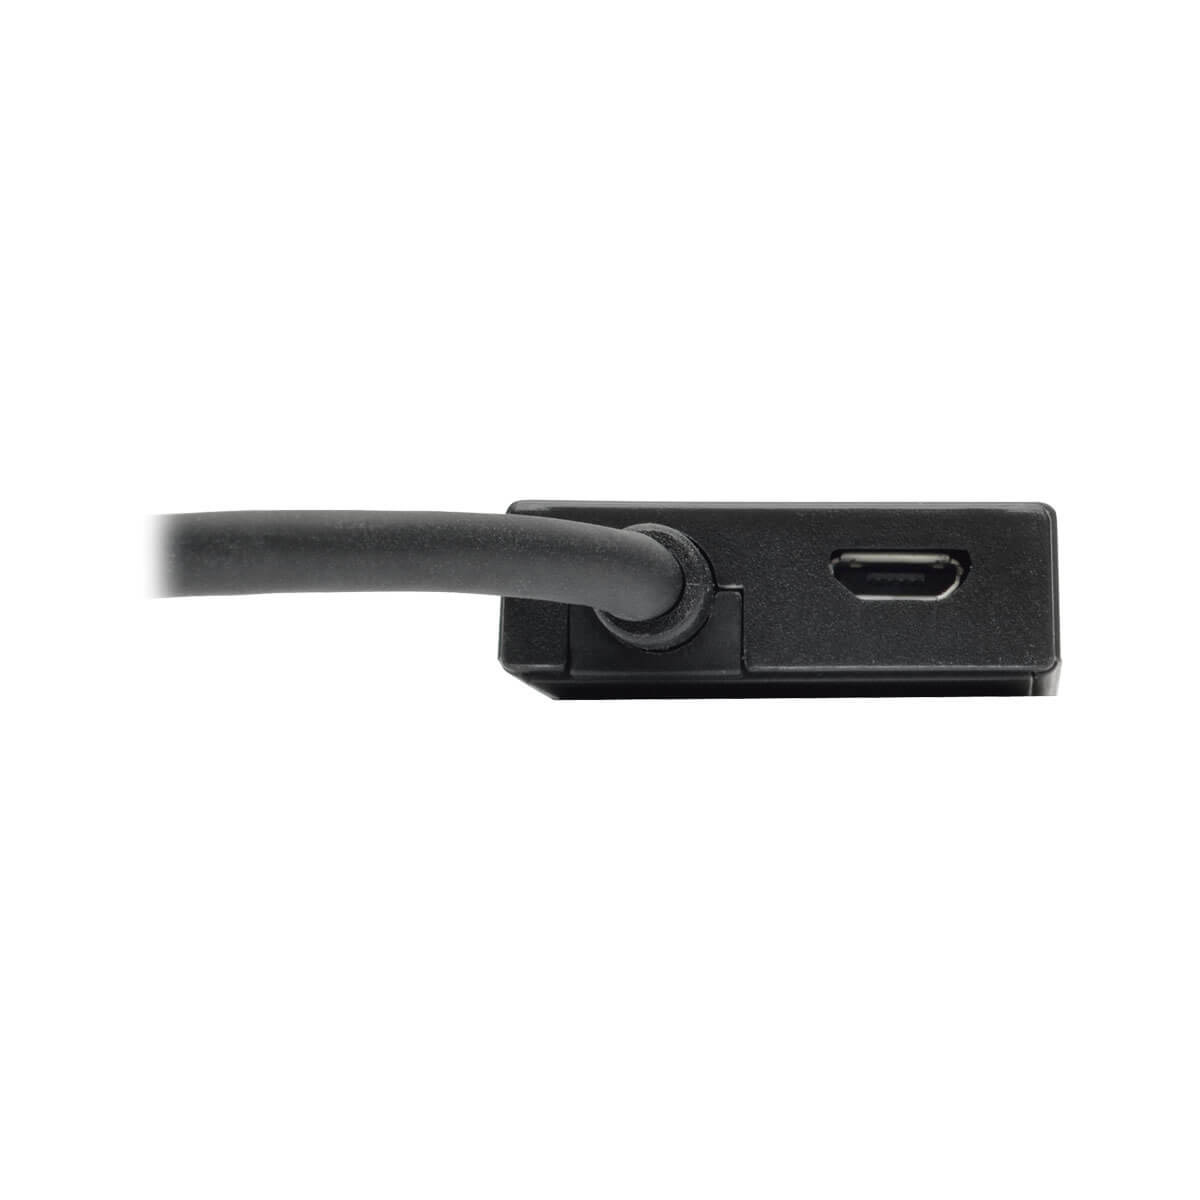 4PT Portable Slim USB 3.0 Hub w/ Cable